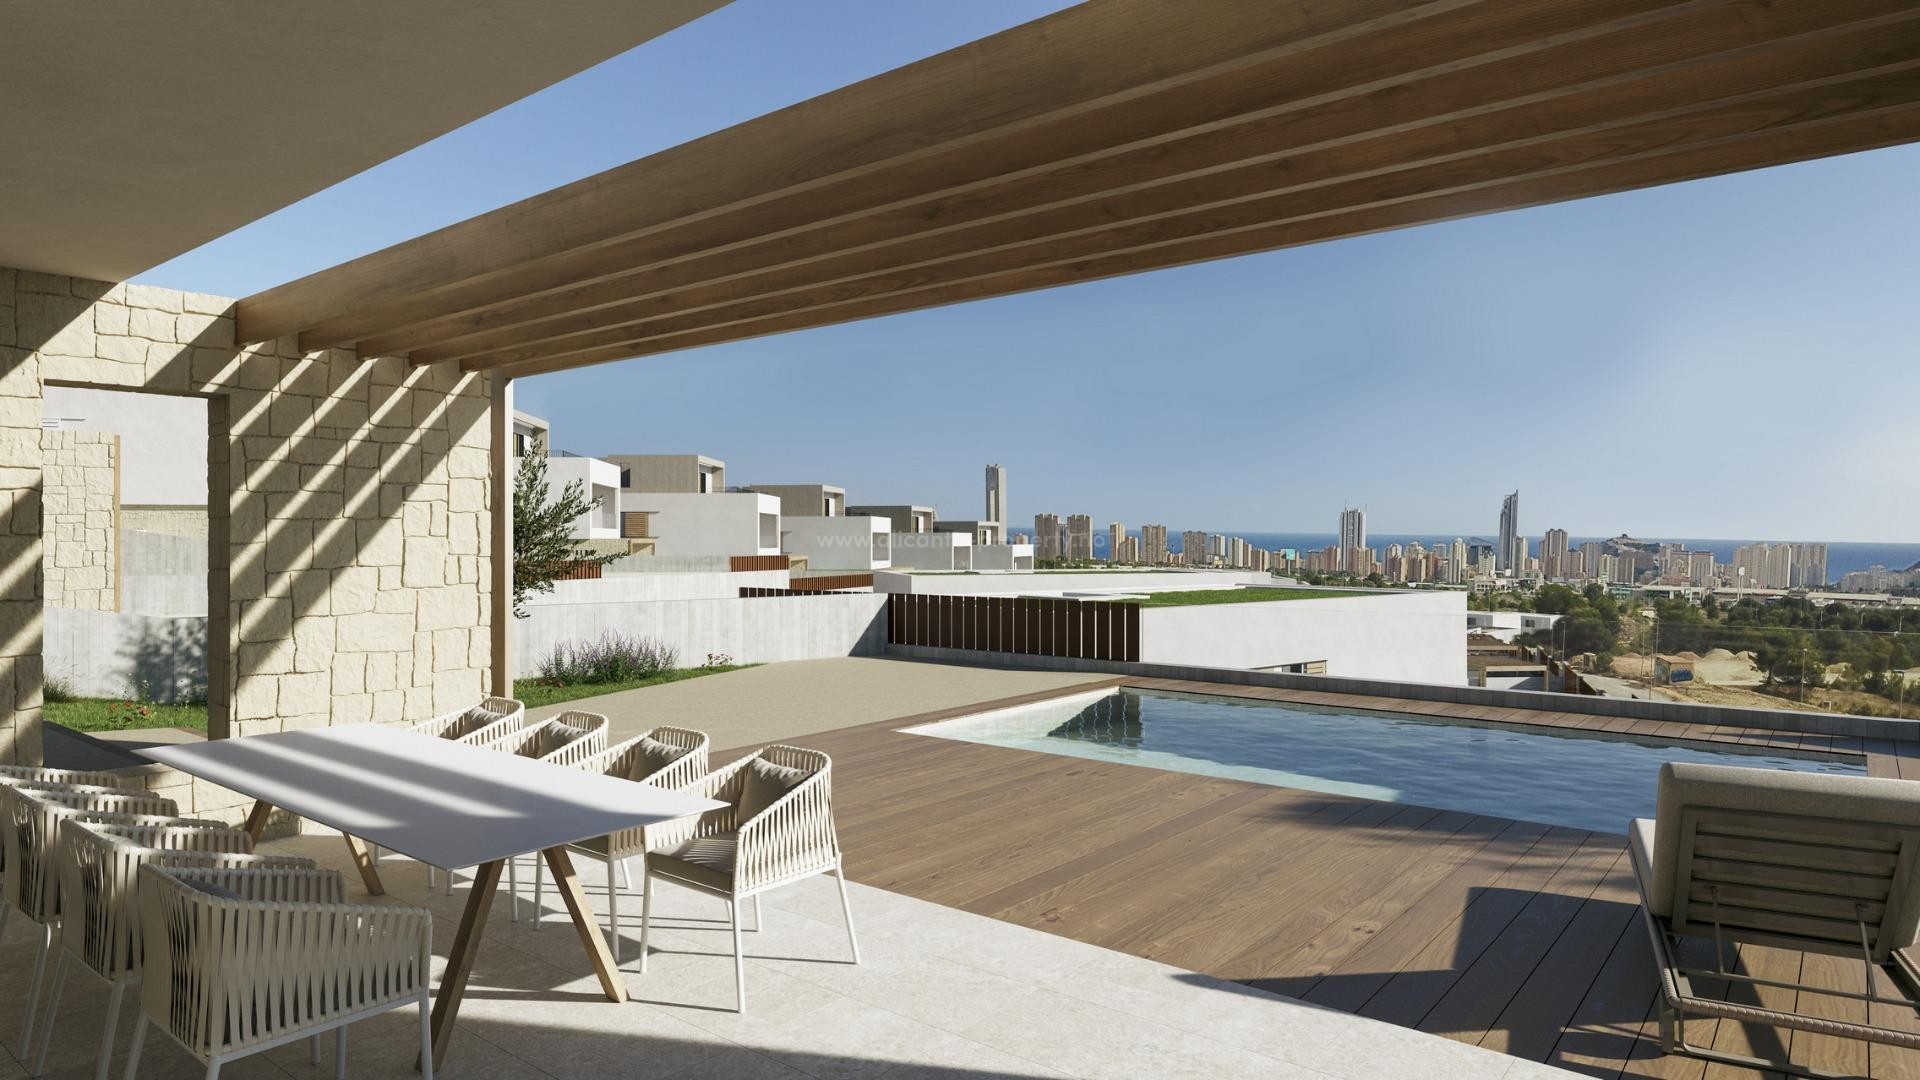 Villaer med 4 soverom og 4 bad i Finestrat, privat hage med basseng med fantastisk utsikt over Benidorm. Ligger i Marina Baixa-regionen på Costa Blanca